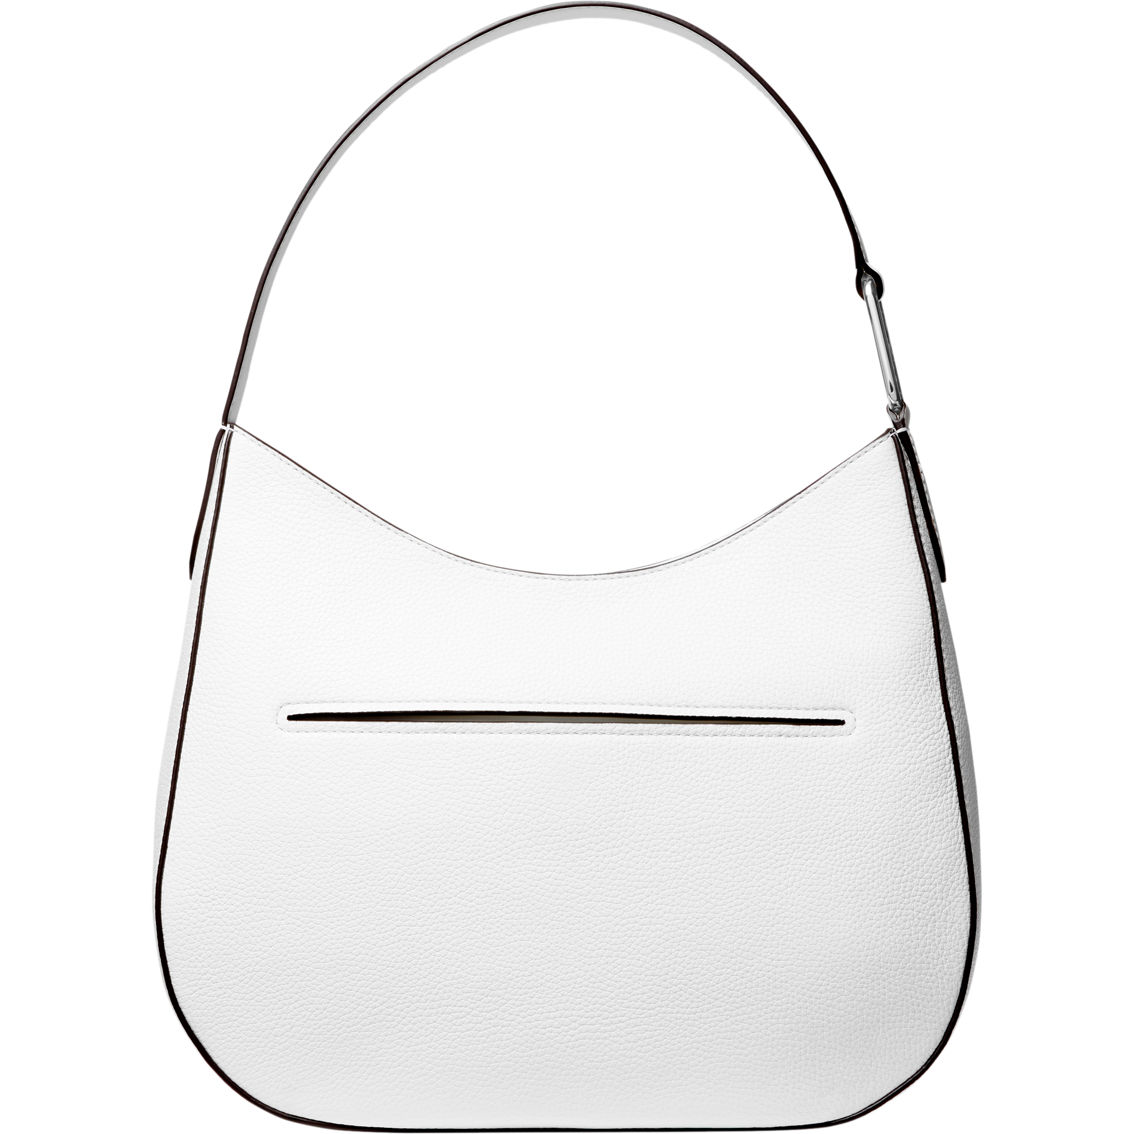 Michael Kors Kensington Optic White Large Top Zip Hobo Shoulder Bag - Image 2 of 4